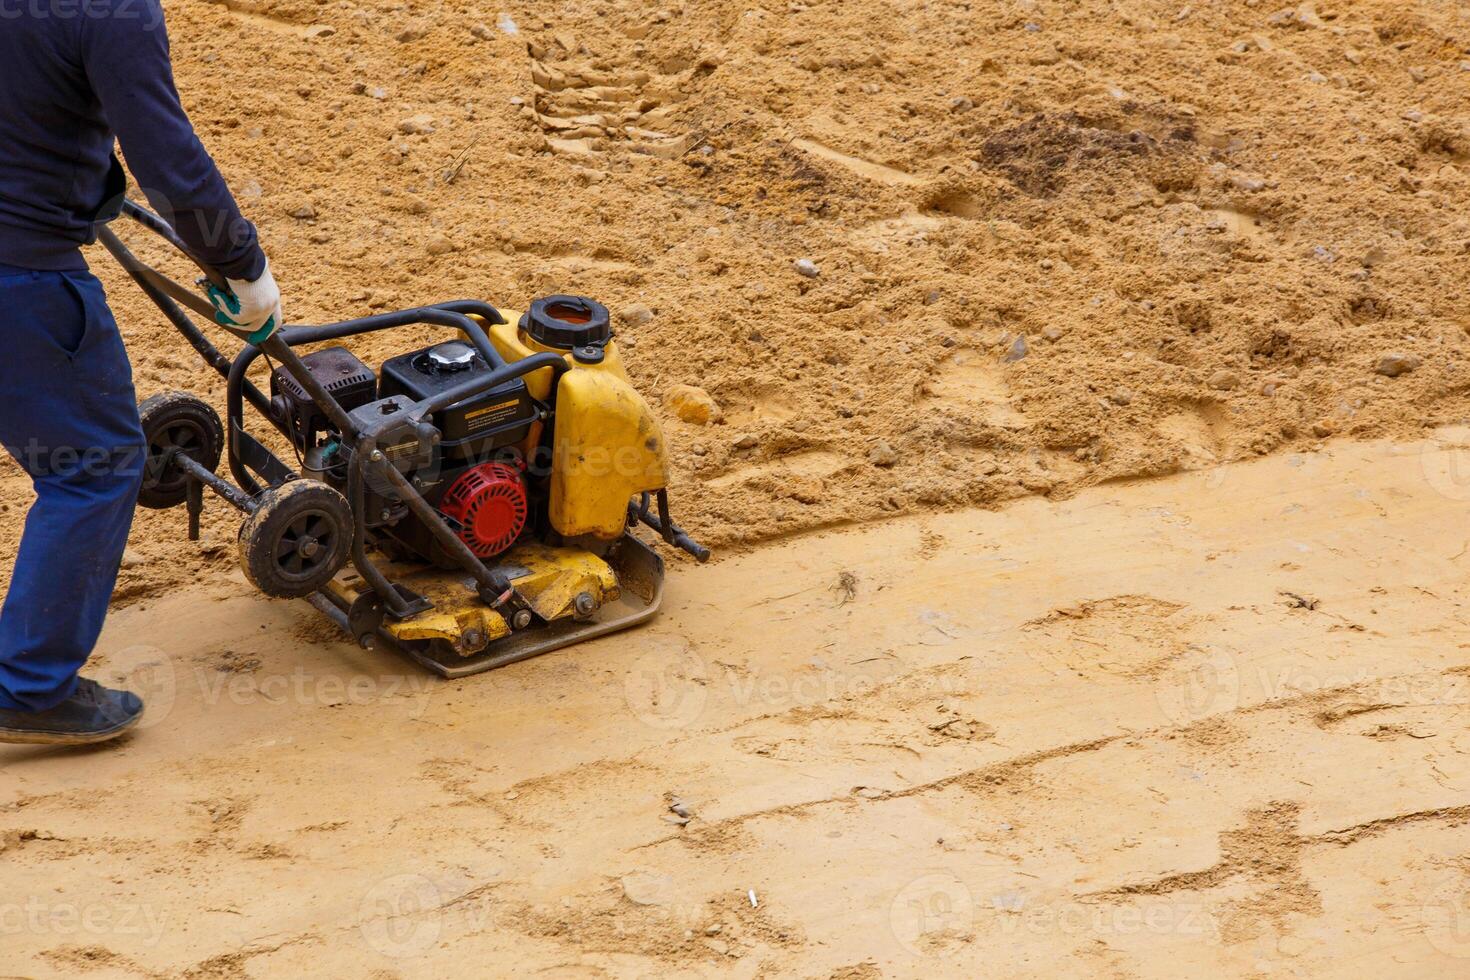 arbetstagare använder sig av vibrerande tallrik komprimator för kompaktering sand under väg konstruktion. foto